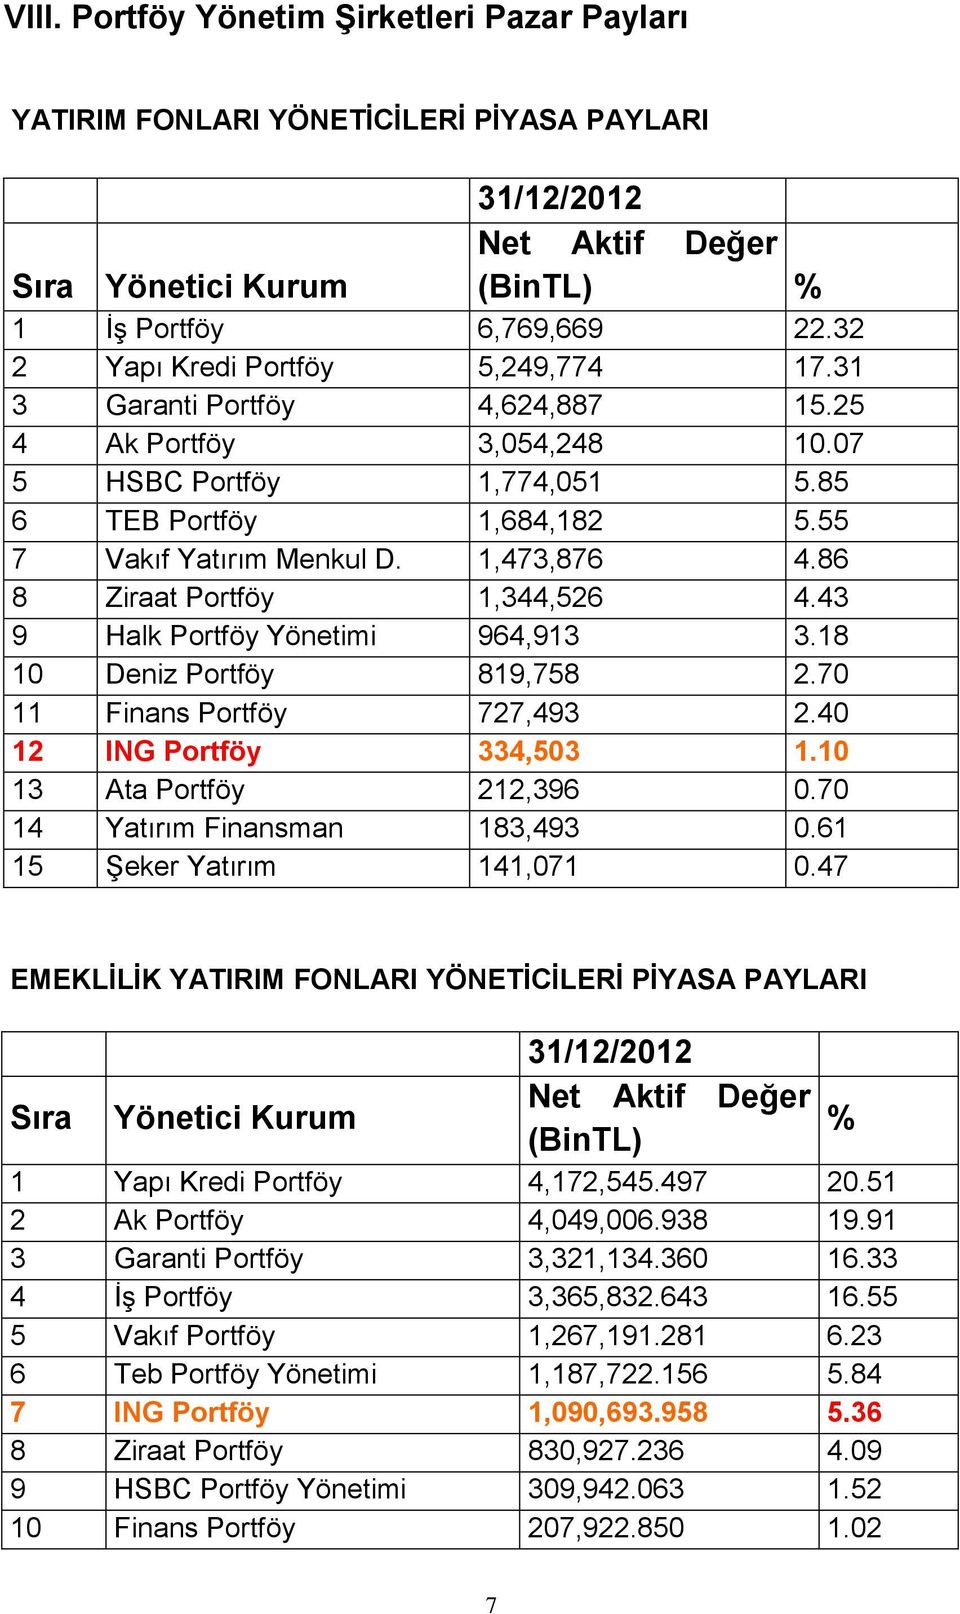 86 8 Ziraat Portföy 1,344,526 4.43 9 Halk Portföy Yönetimi 964,913 3.18 10 Deniz Portföy 819,758 2.70 11 Finans Portföy 727,493 2.40 12 ING Portföy 334,503 1.10 13 Ata Portföy 212,396 0.